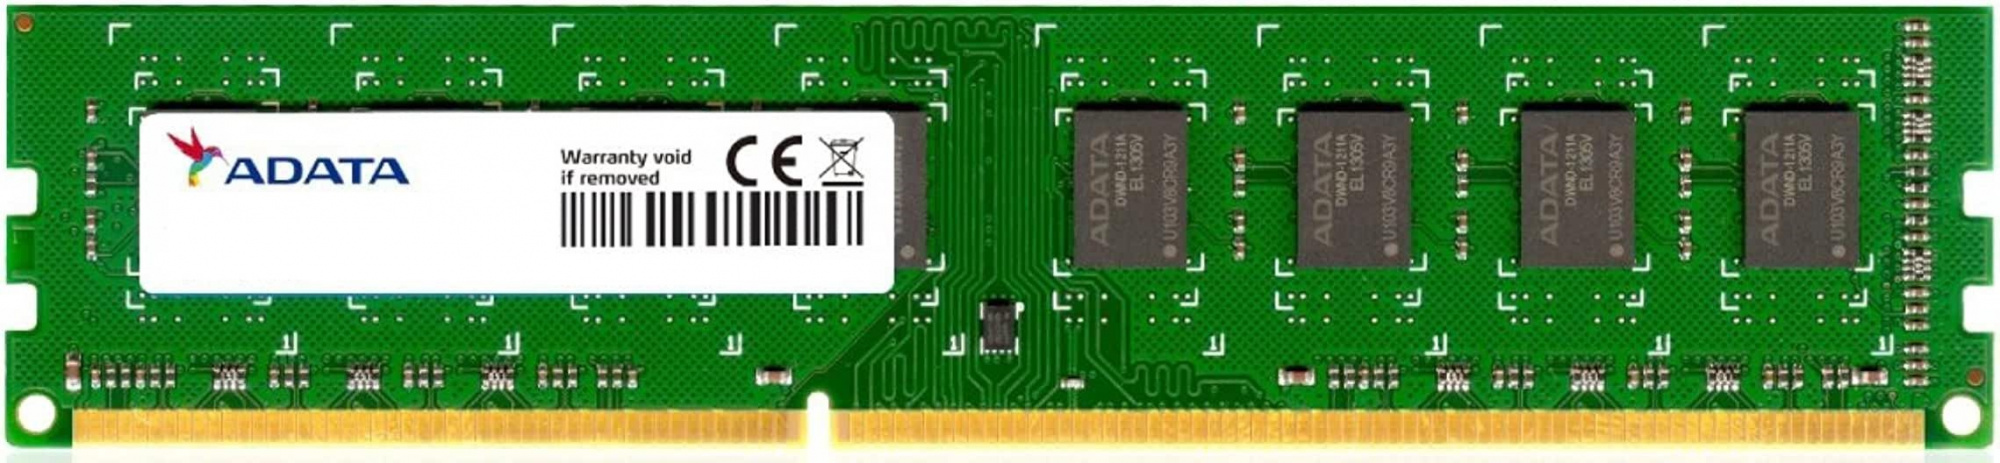 Память A-Data DDR3L 4Gb 1600MHz (ADDX1600W4G11-SPU)